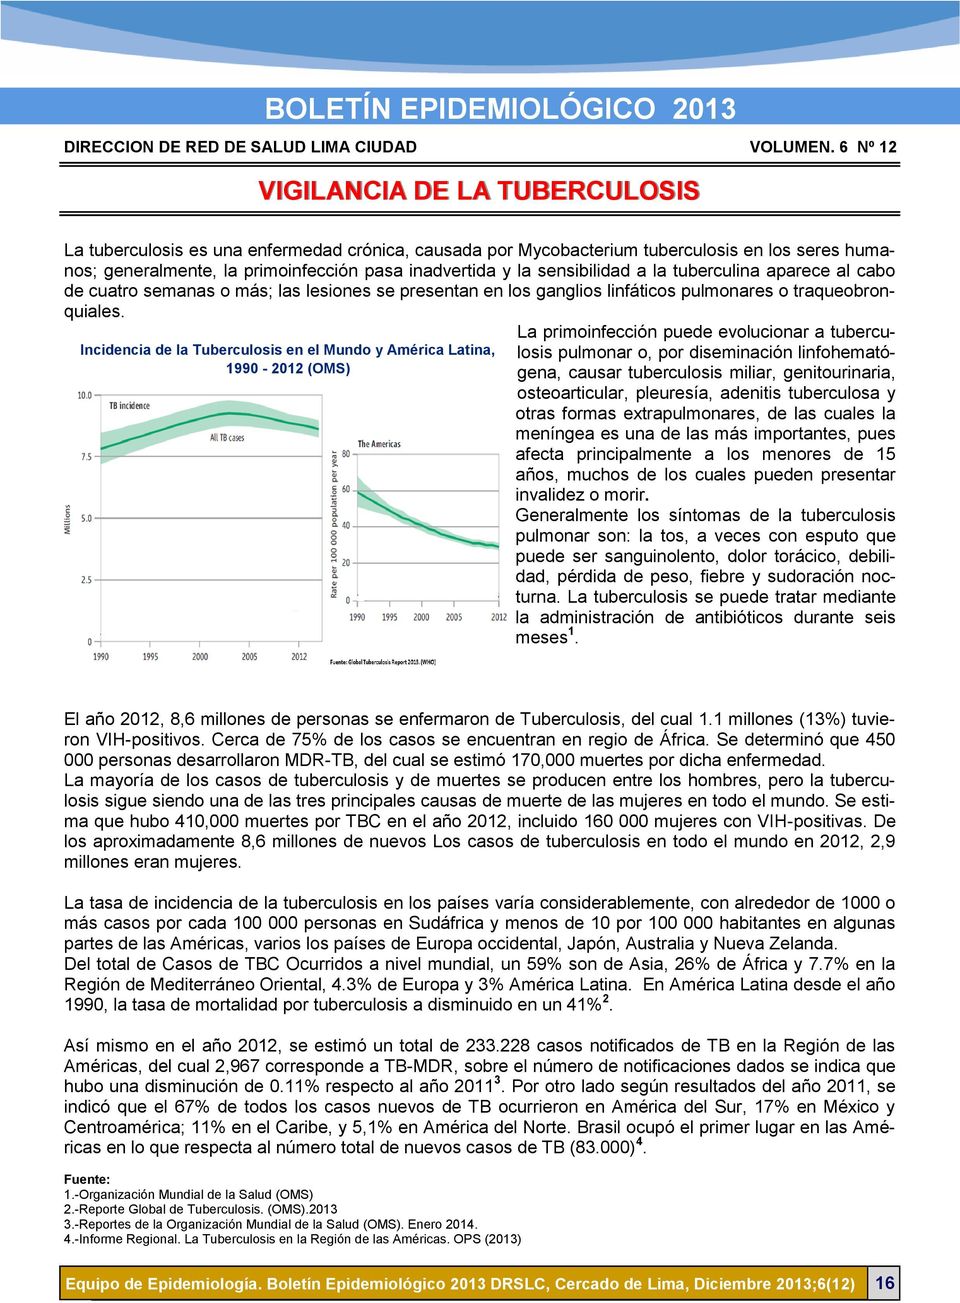 Incidencia de la Tuberculosis en el Mundo y América Latina, 1990-2012 (OMS) La primoinfección puede evolucionar a tuberculosis pulmonar o, por diseminación linfohematógena, causar tuberculosis